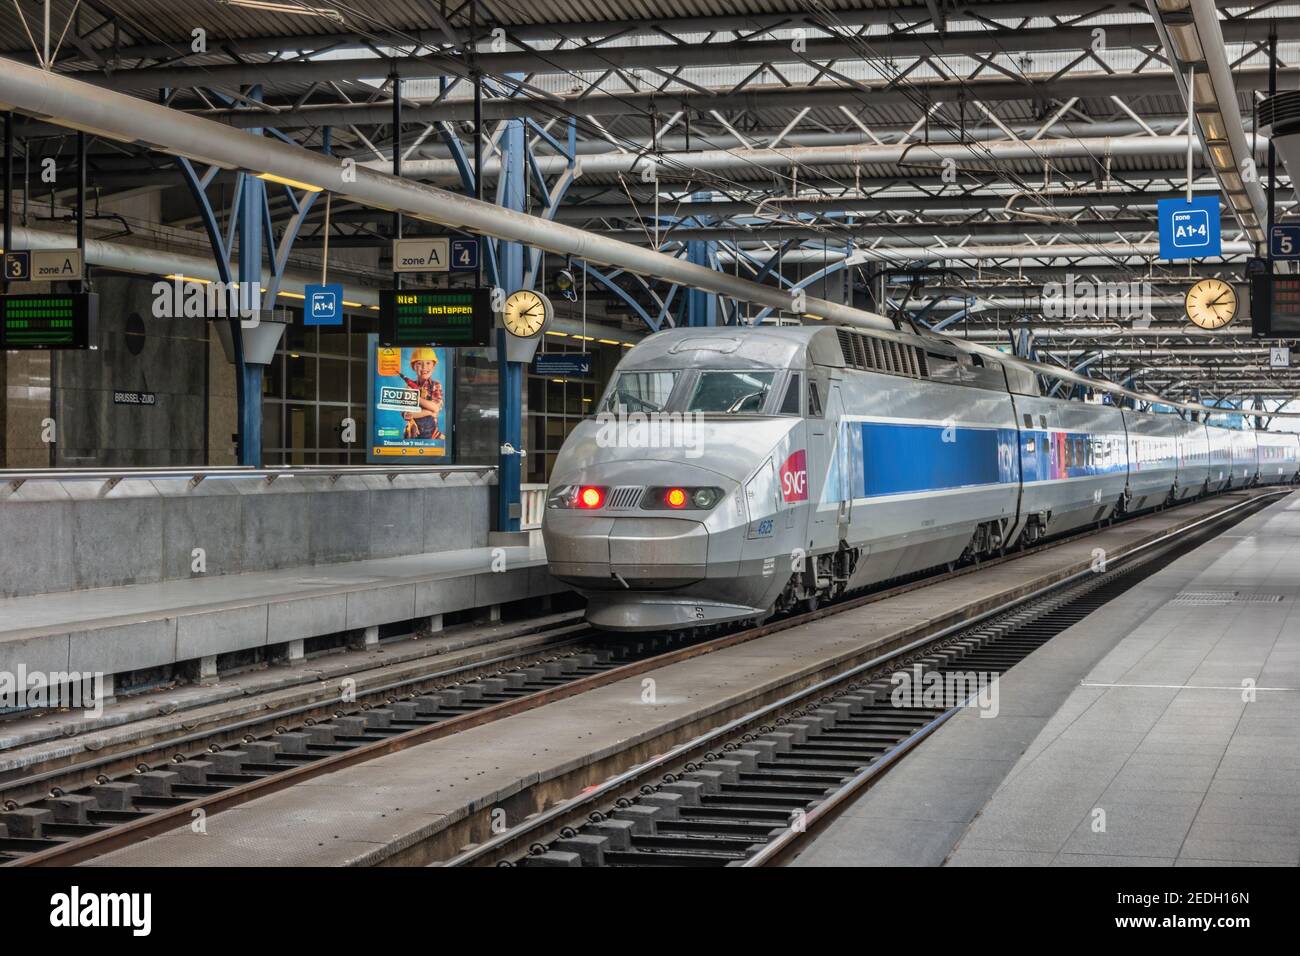 Bruselas, Bélgica - 8 de mayo de 2017: Tren de alta velocidad en la estación de tren sur de Bruselas (Bruxelles Midi) la estación más grande de la ciudad de Bruselas Foto de stock